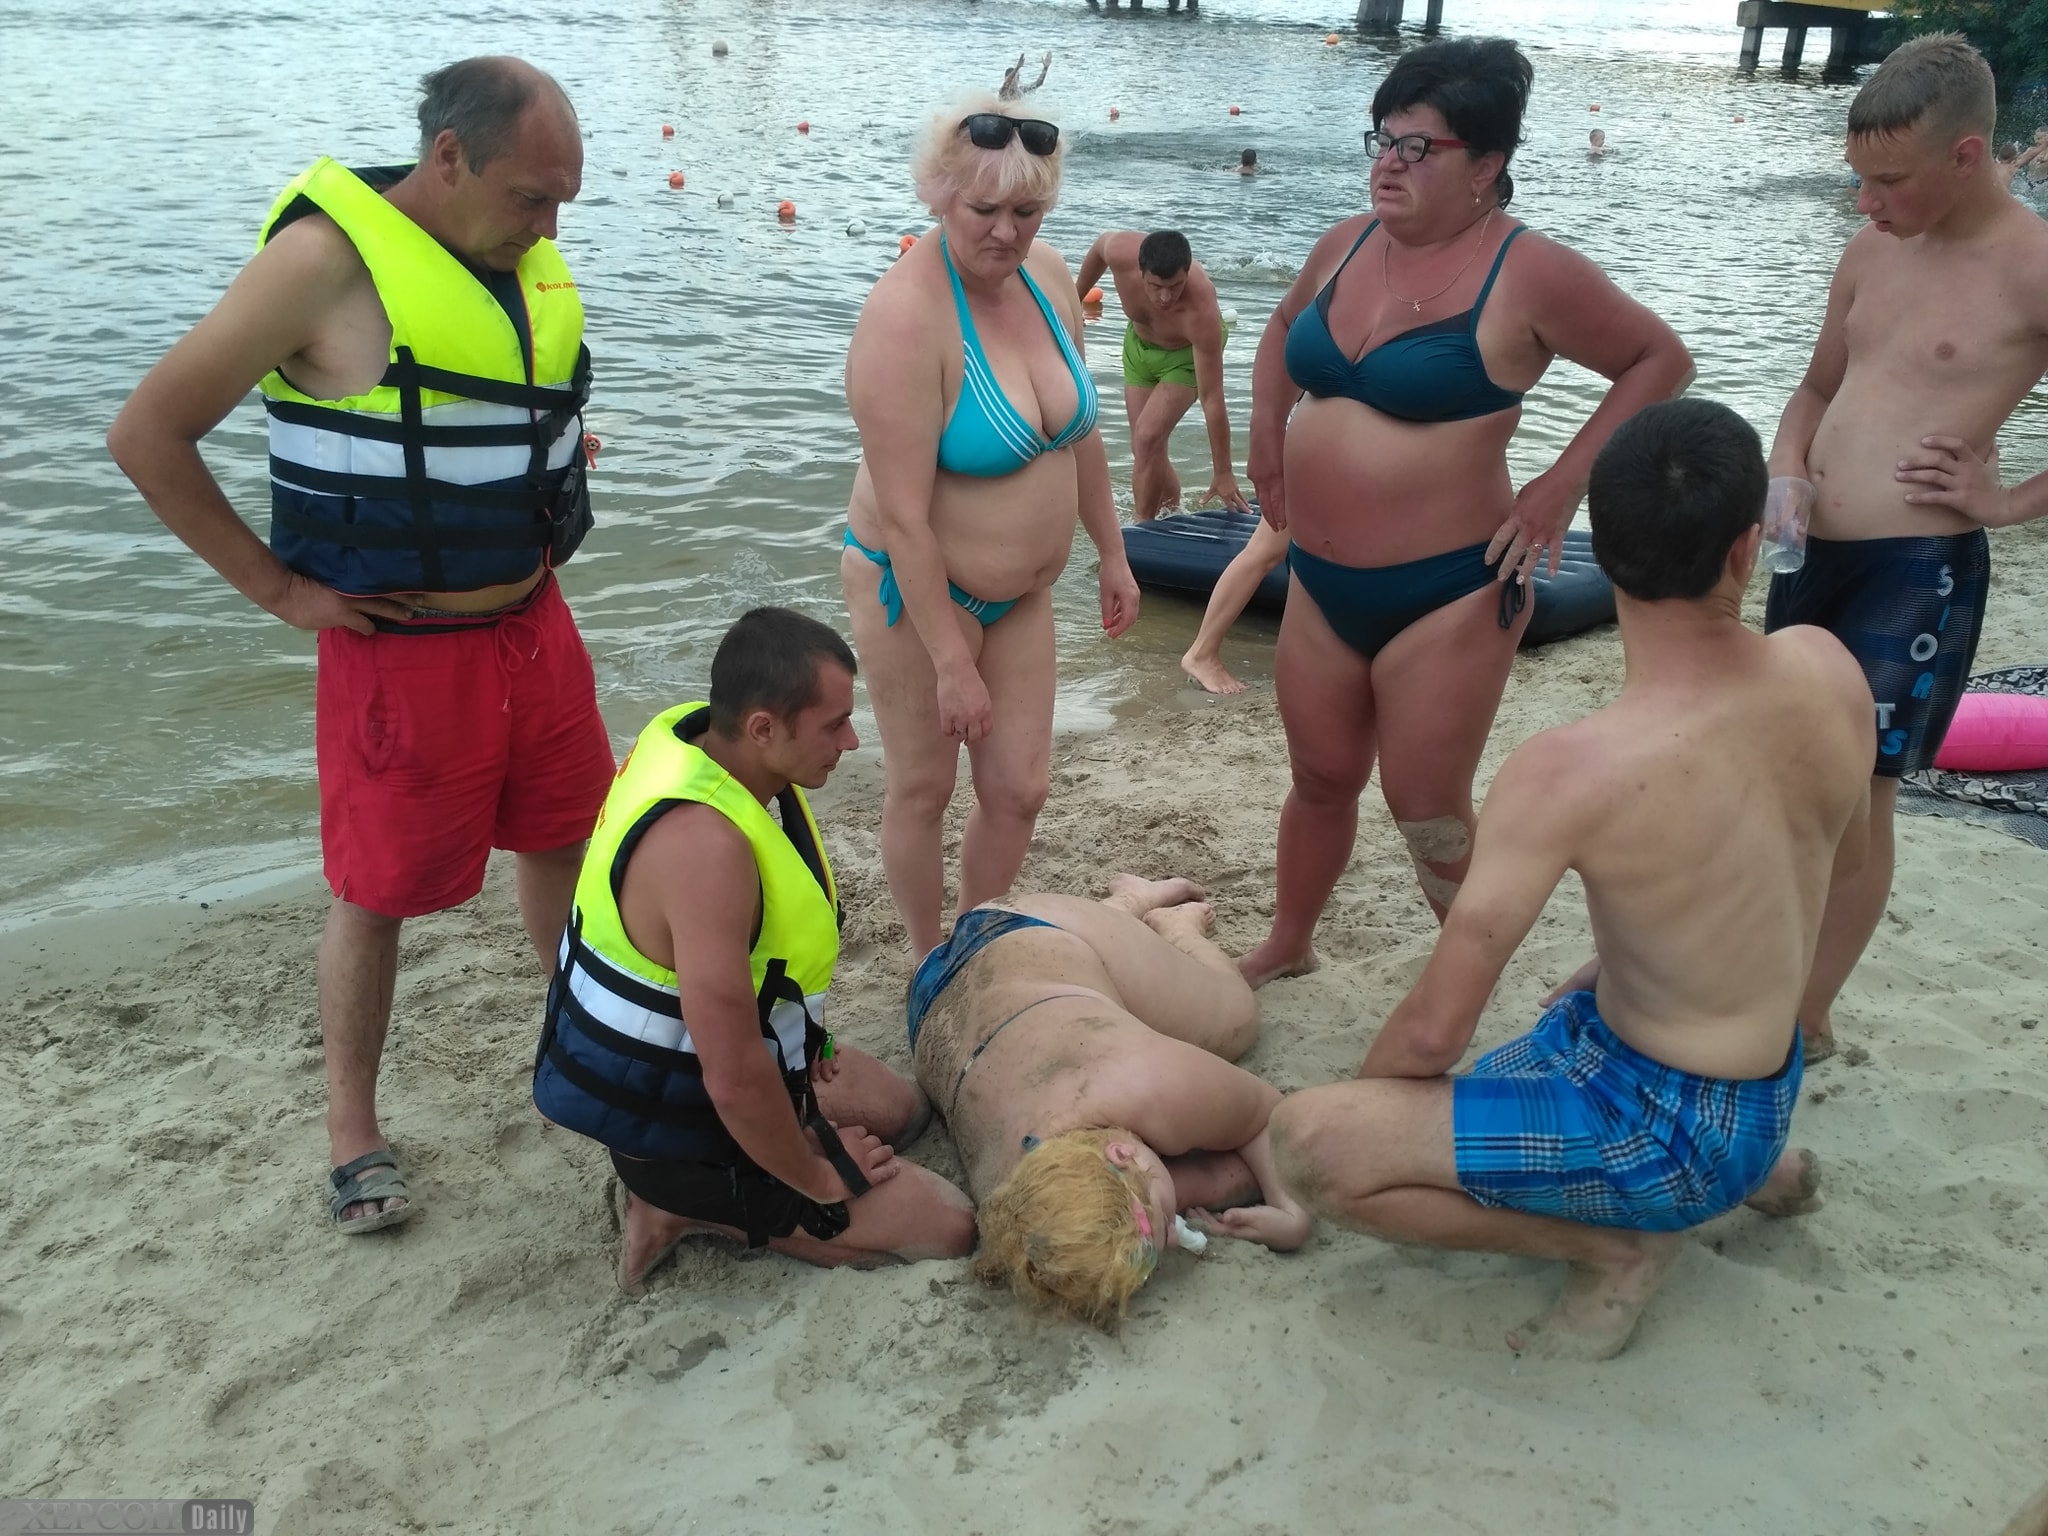 Свежие новости херсона сегодня. Херсон Гидропарк. Утонувшие девушки на пляже фото. Пляж Херсон девушки. Херсон до 2014 Гидропарк.